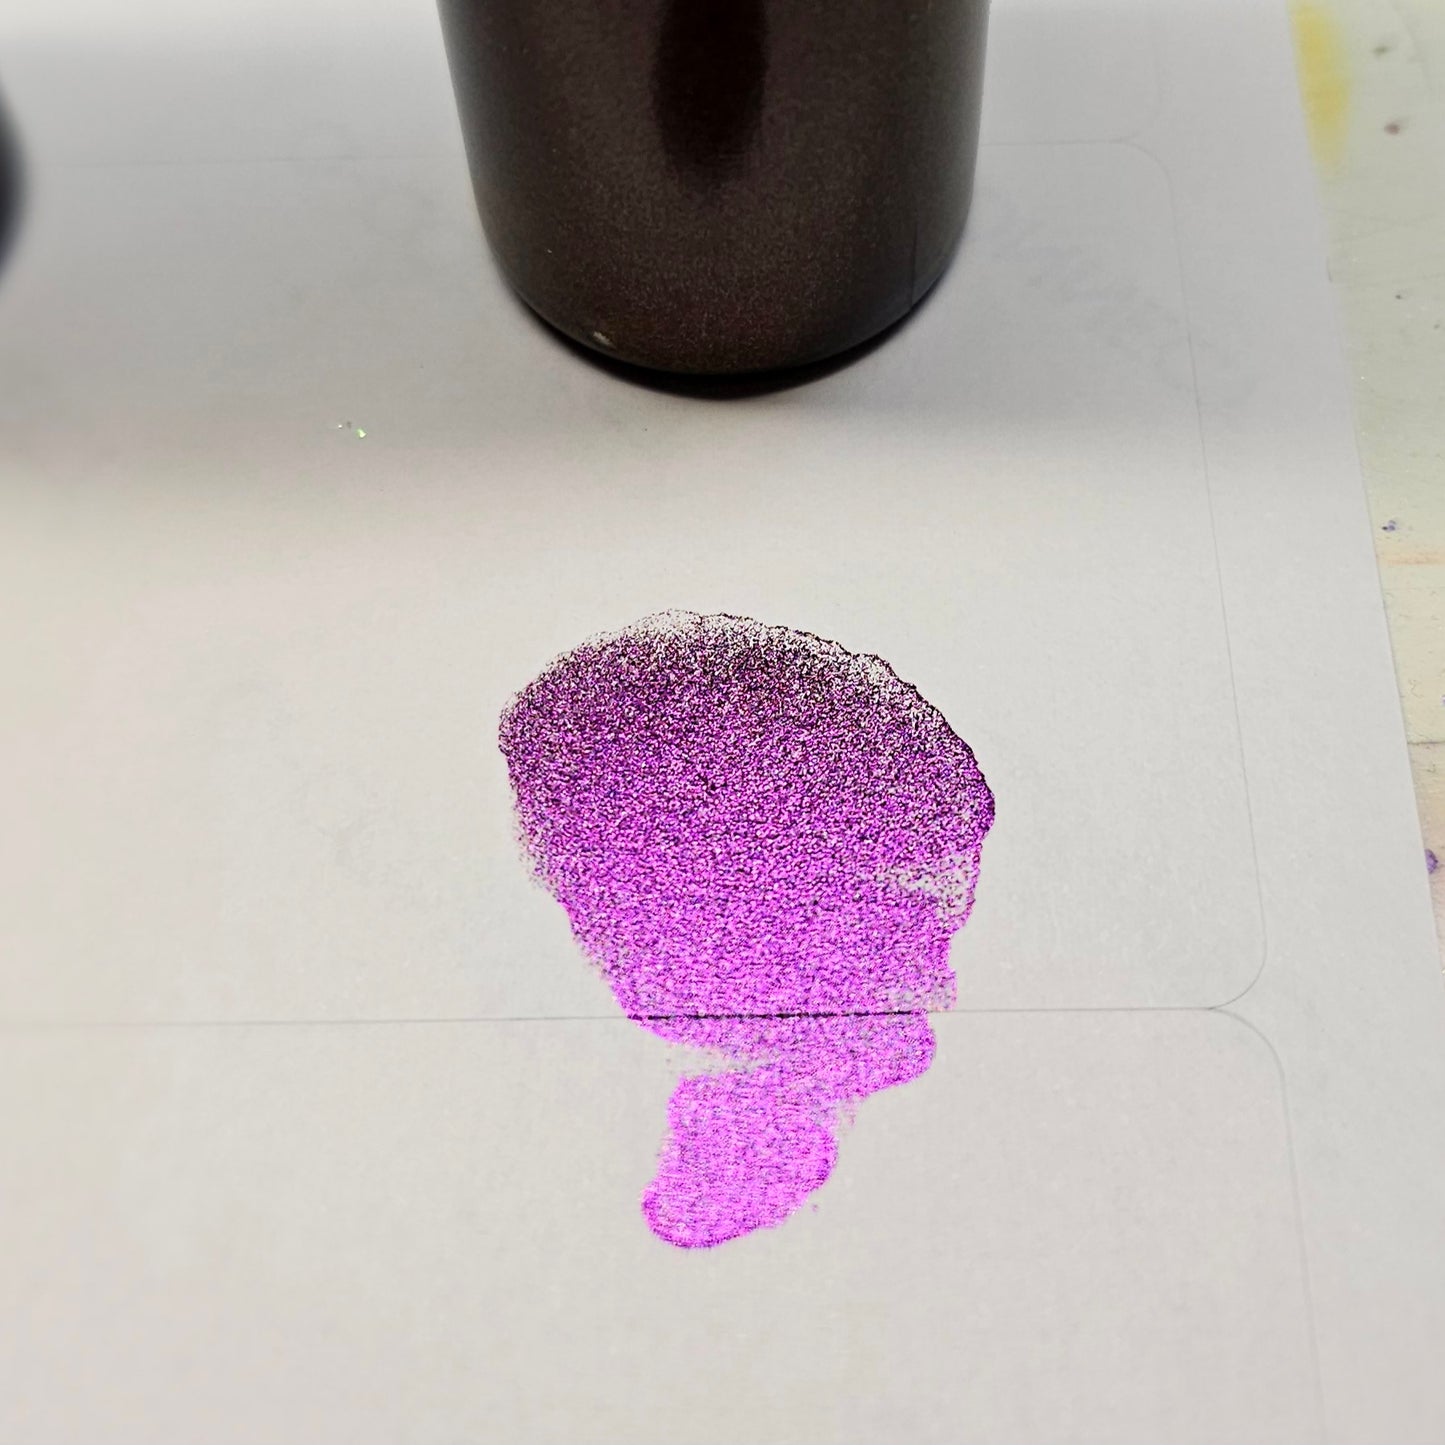 Chromeleon alloy ink